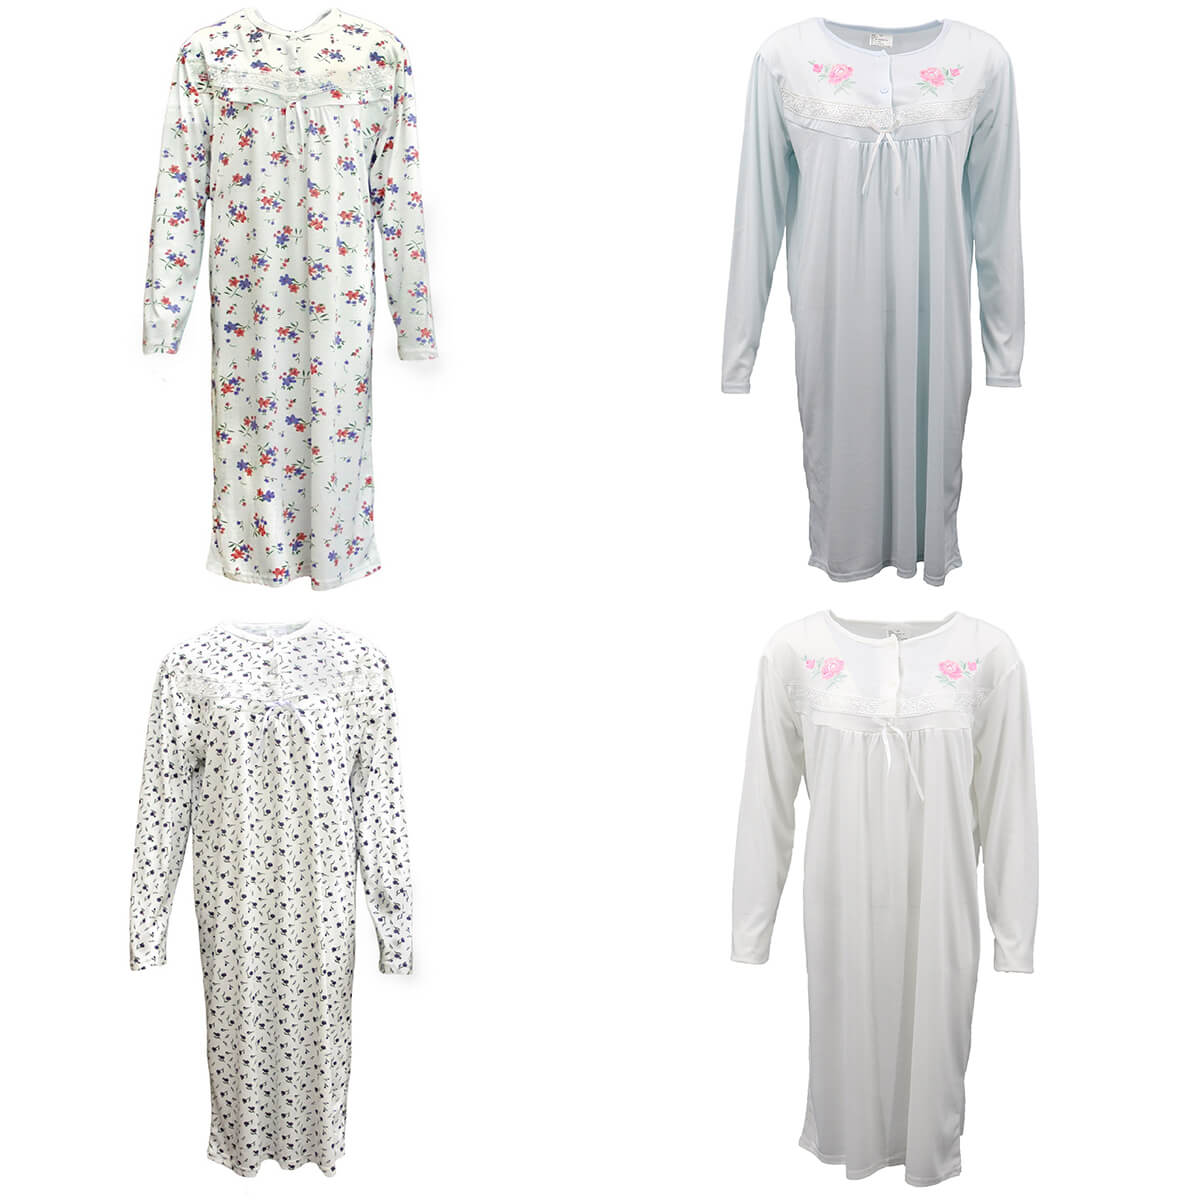 100% Cotton Women Nightie Night Gown Pajamas Pyjamas Winter Sleepwear PJs Dress, Light Pink, 12